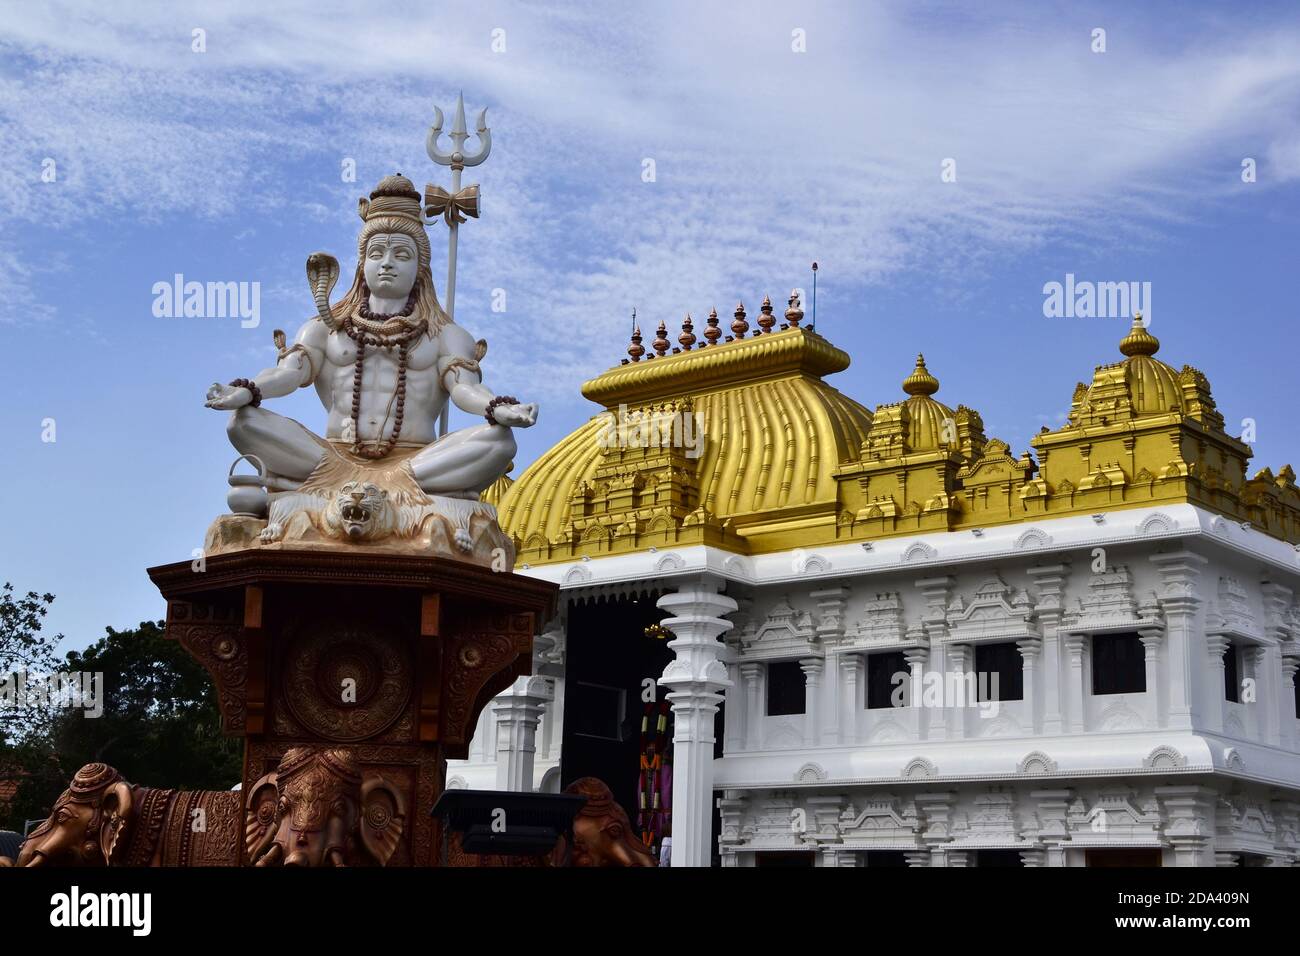 Shiva statue near hinduism temple with bright golden roof. Sri Ramayana Darshanam & BharatMata Sadanam, Kanyakumari, India Stock Photo